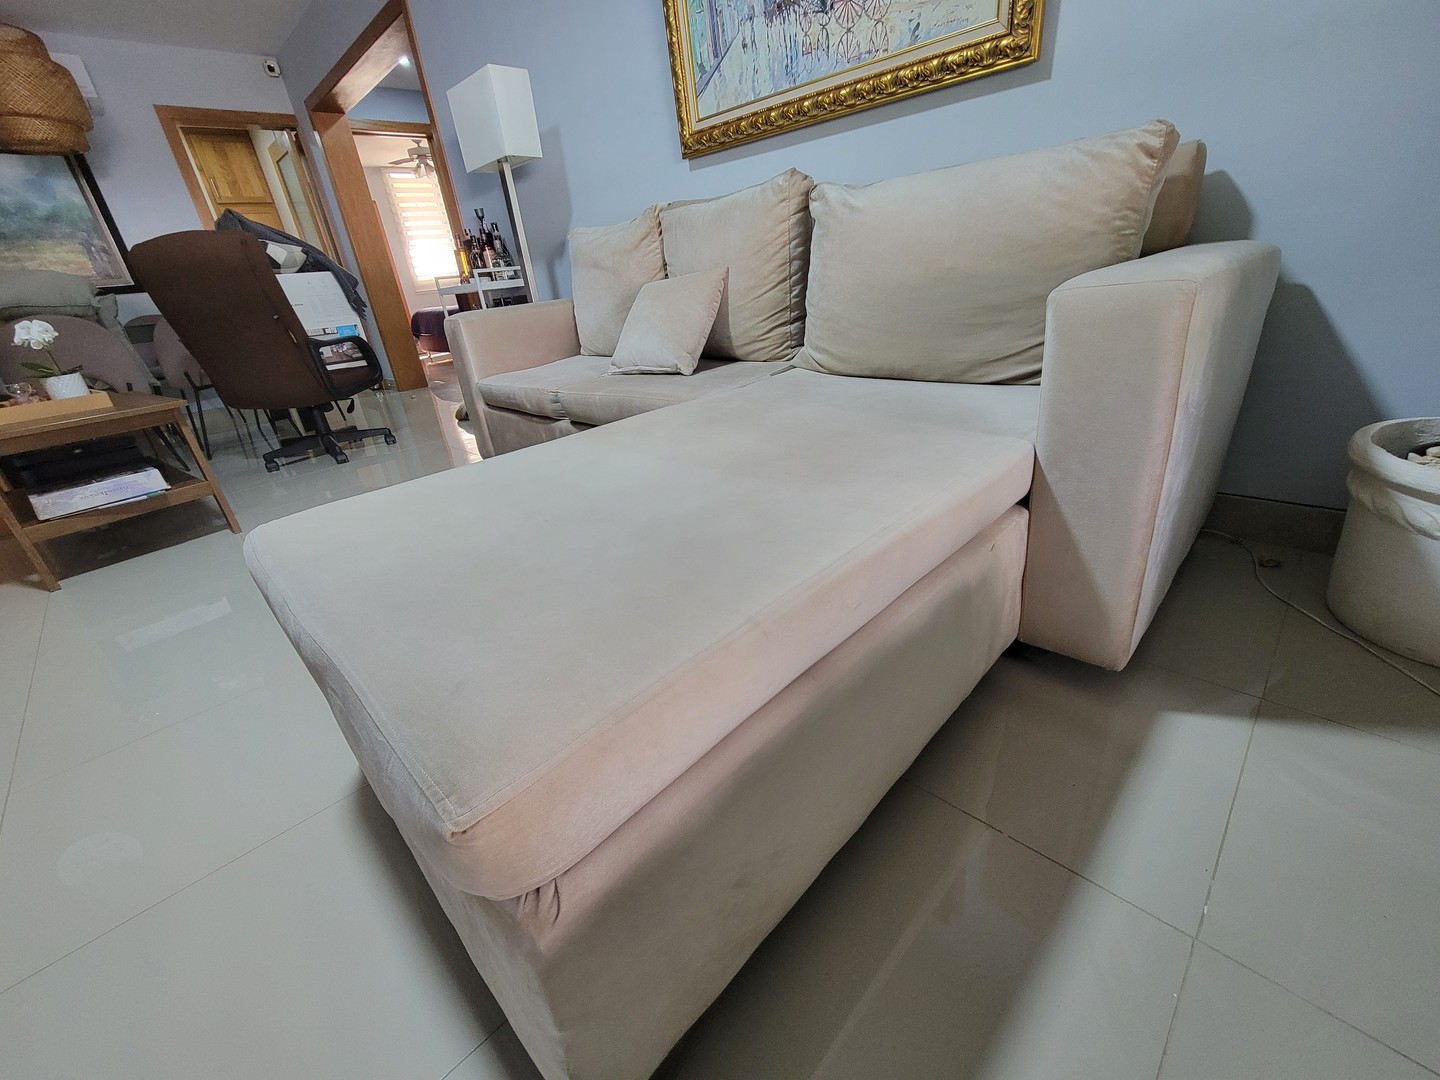 muebles y colchones - Mueble en L de tres plazas, usado en buenas condiciones, color crema.
 5